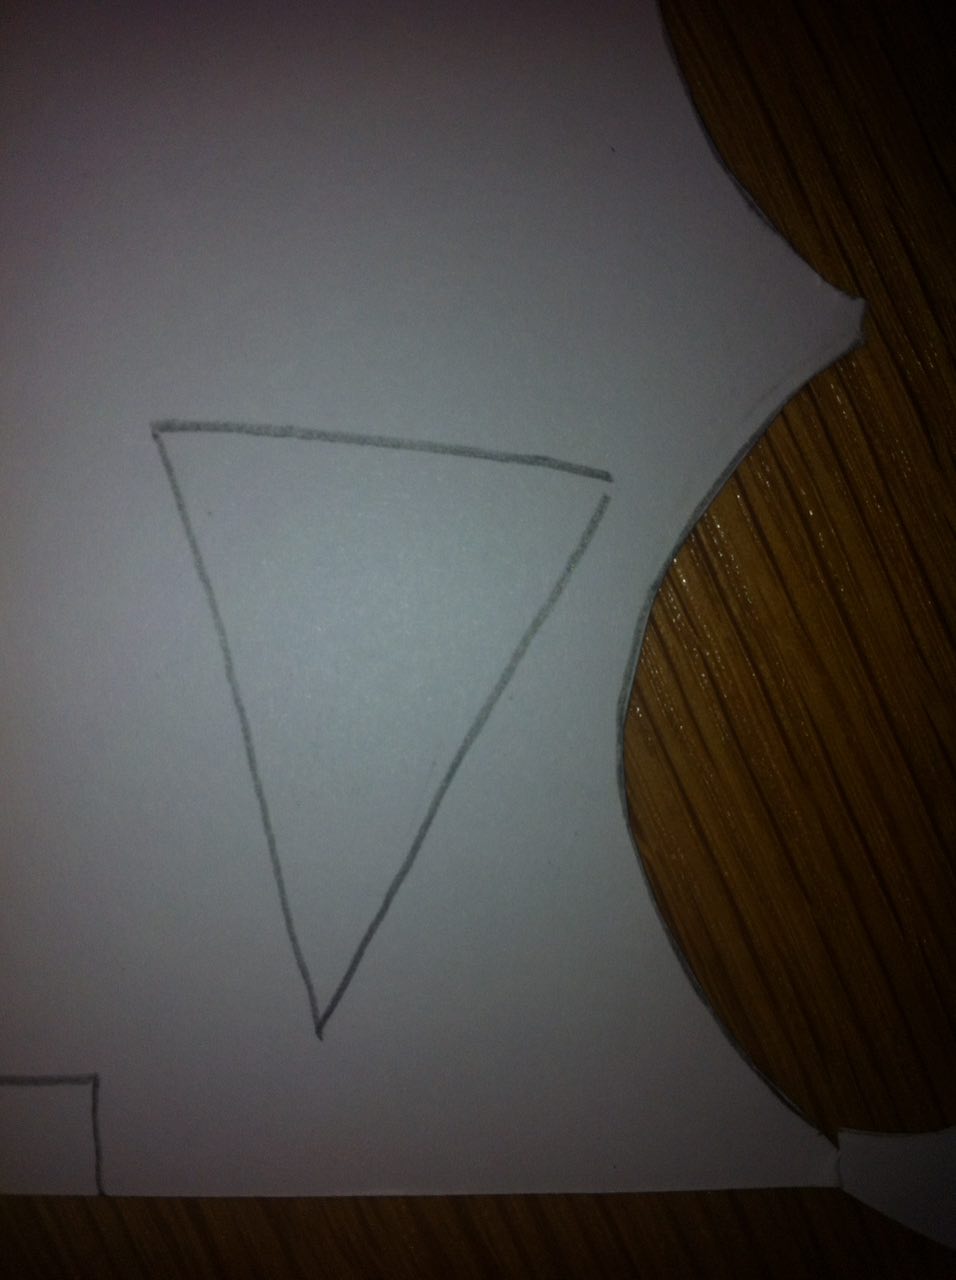 Dessine un triangle sur la feuille blanche pour faire le nez et deux petits rectangles pour les sourcils.